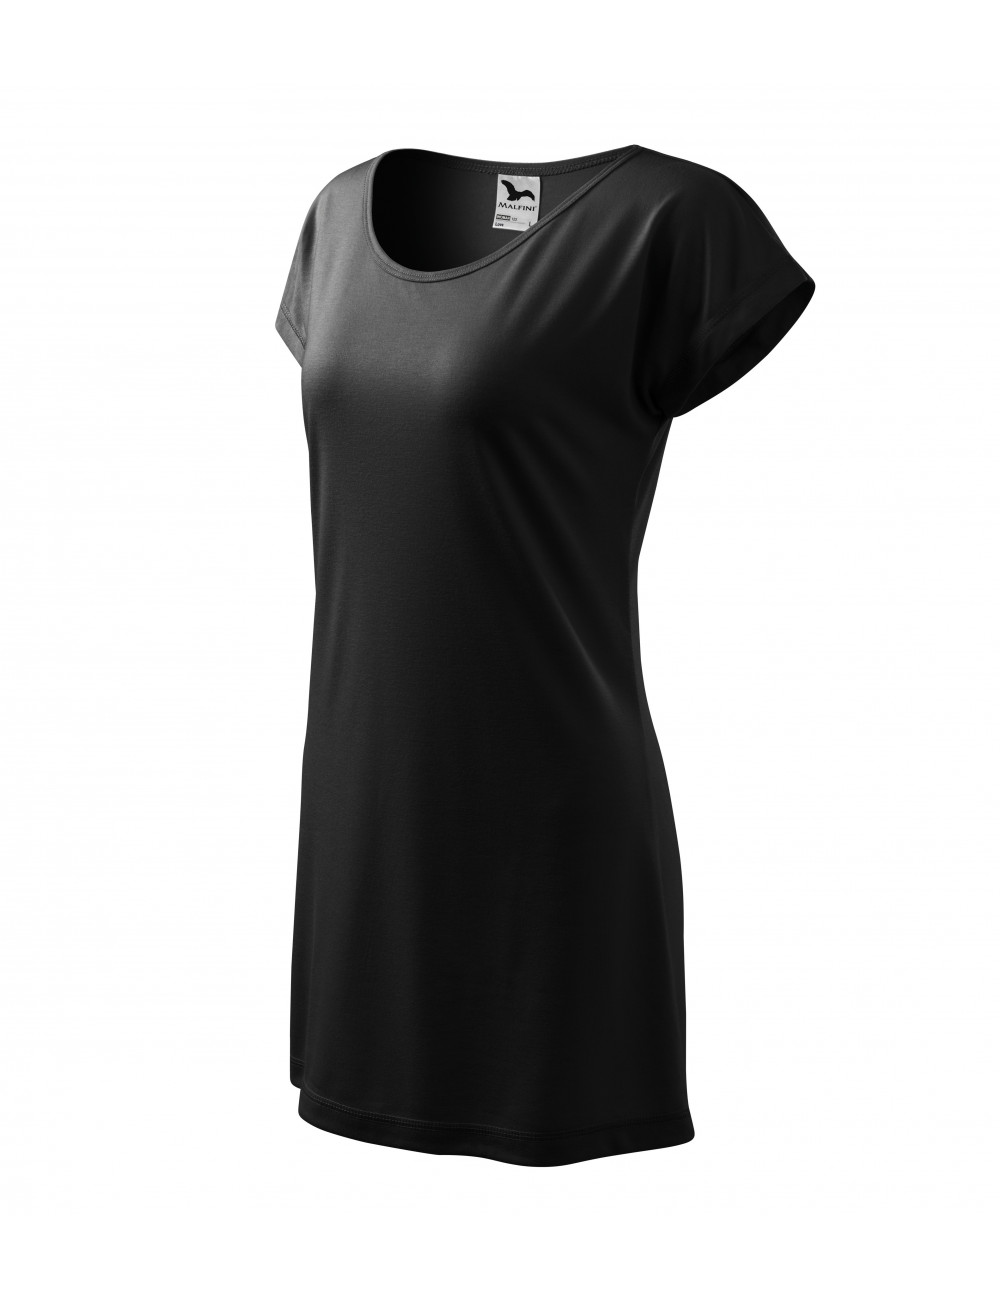 Damen T-Shirt/Kleid Love 123 schwarz Adler Malfini